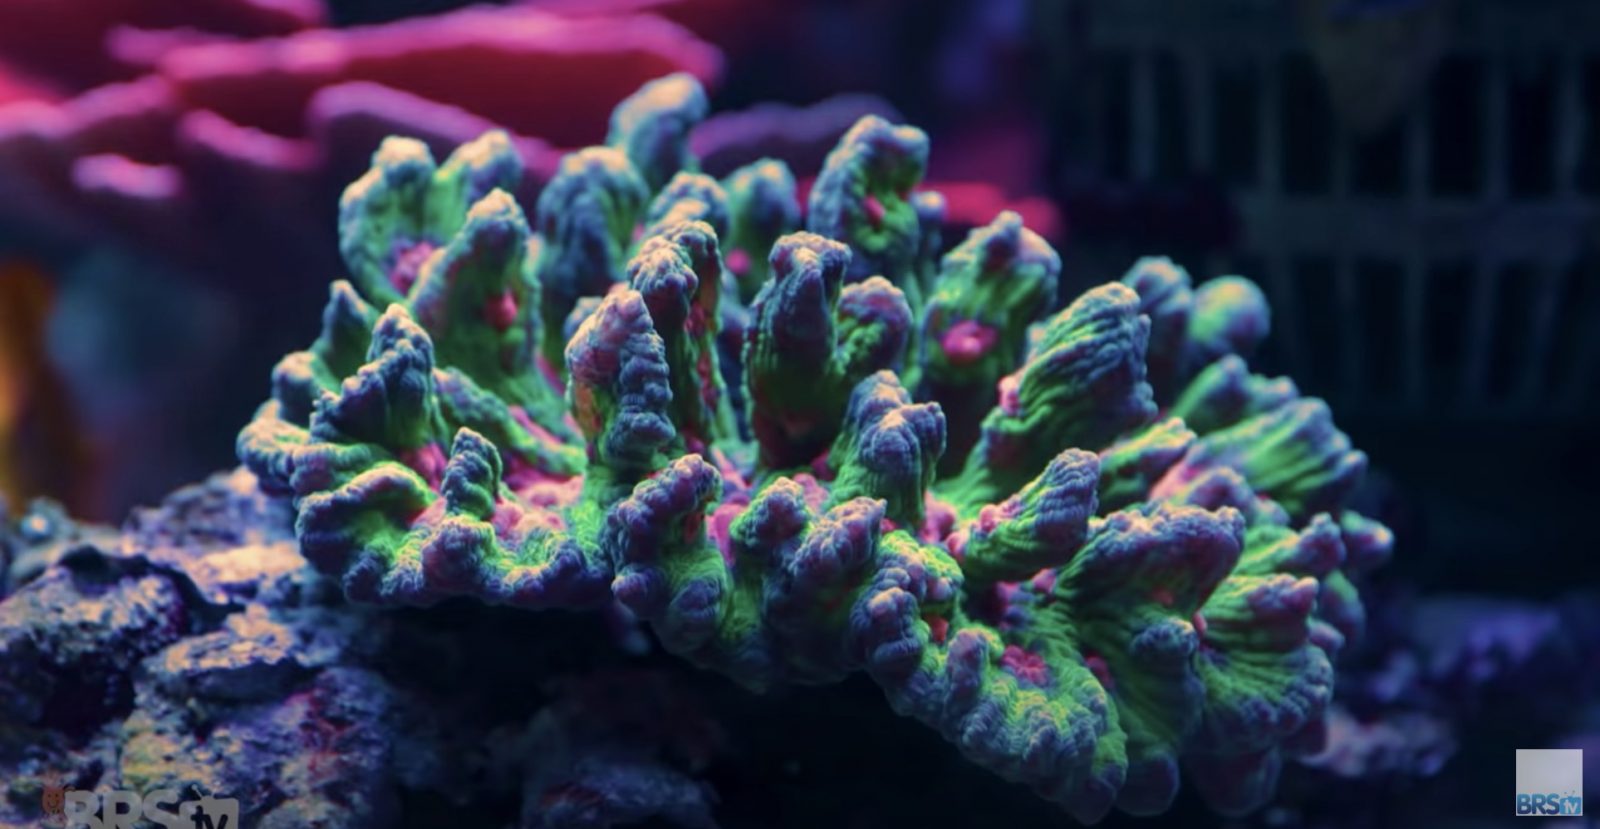 Amazing healthy corals!